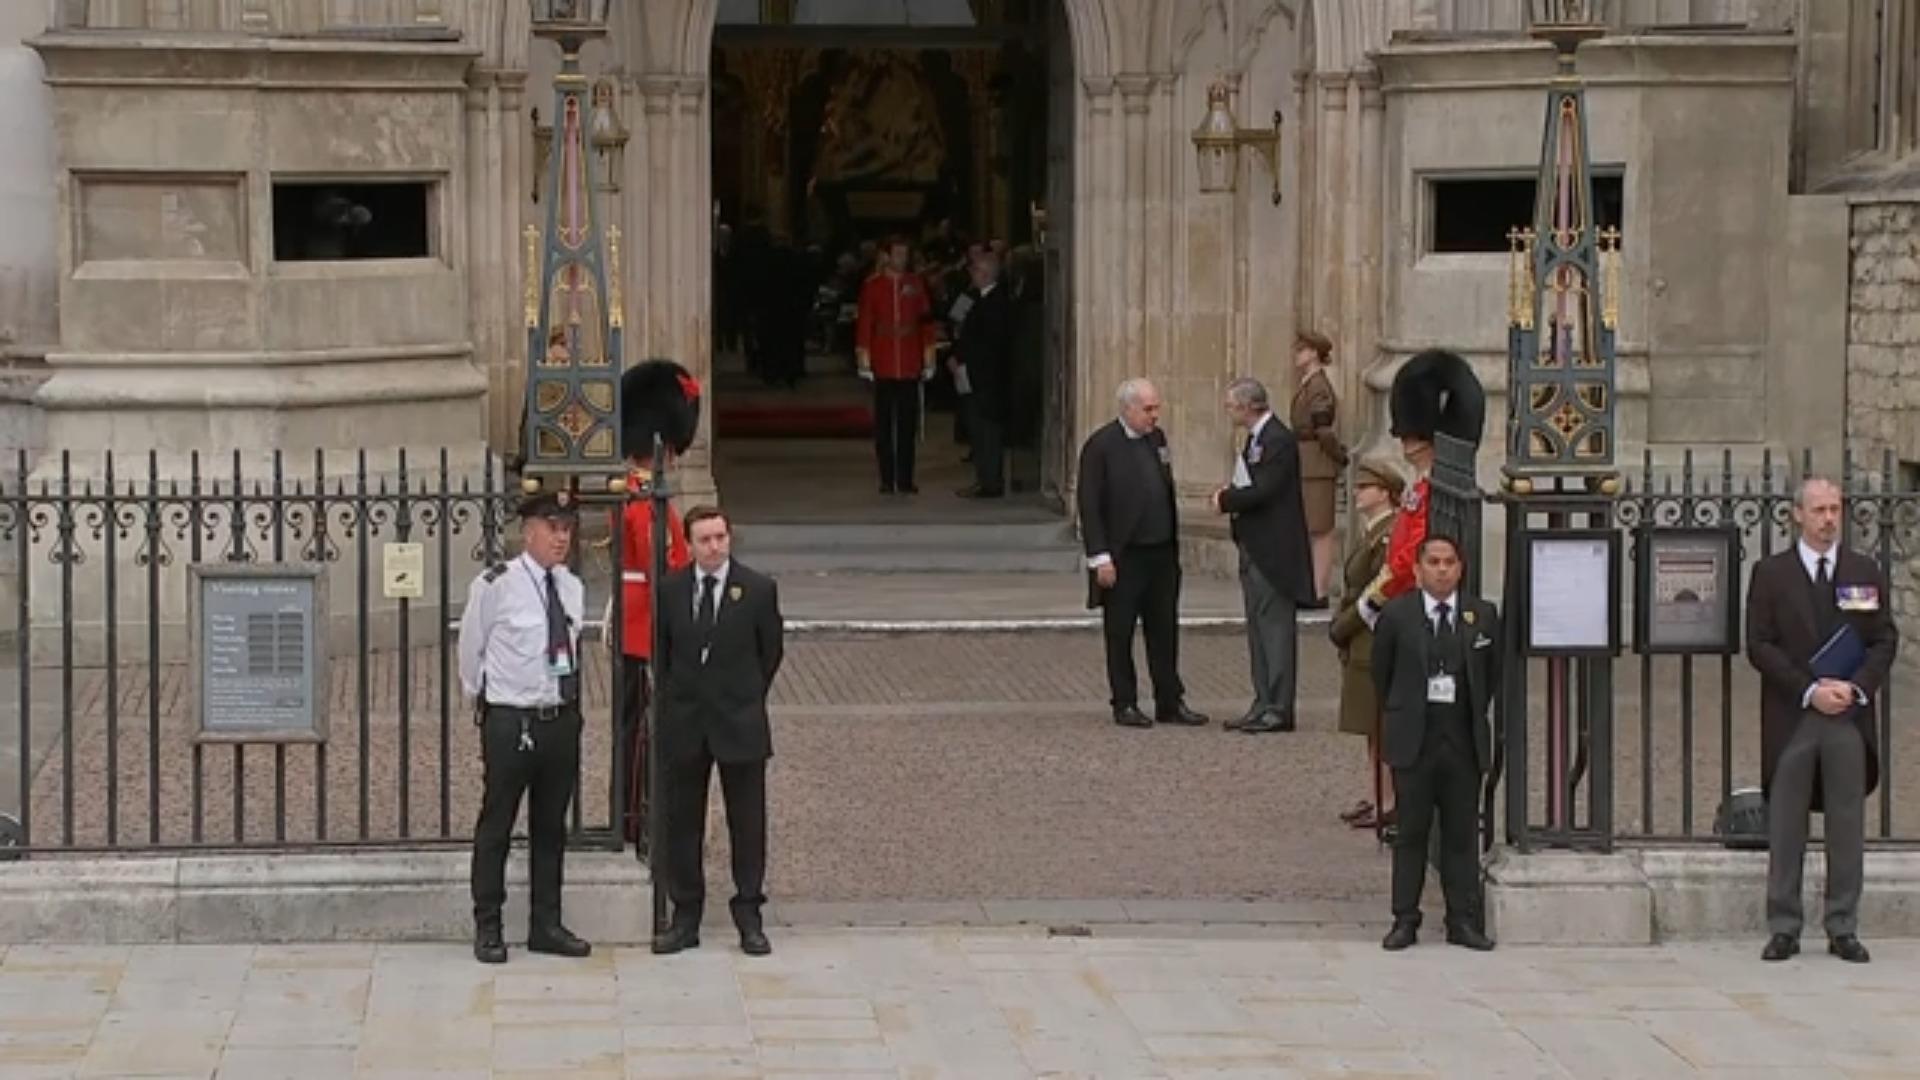 Beerdigung der Queen: So lief der frühe Morgen Oppold und Delling aus London